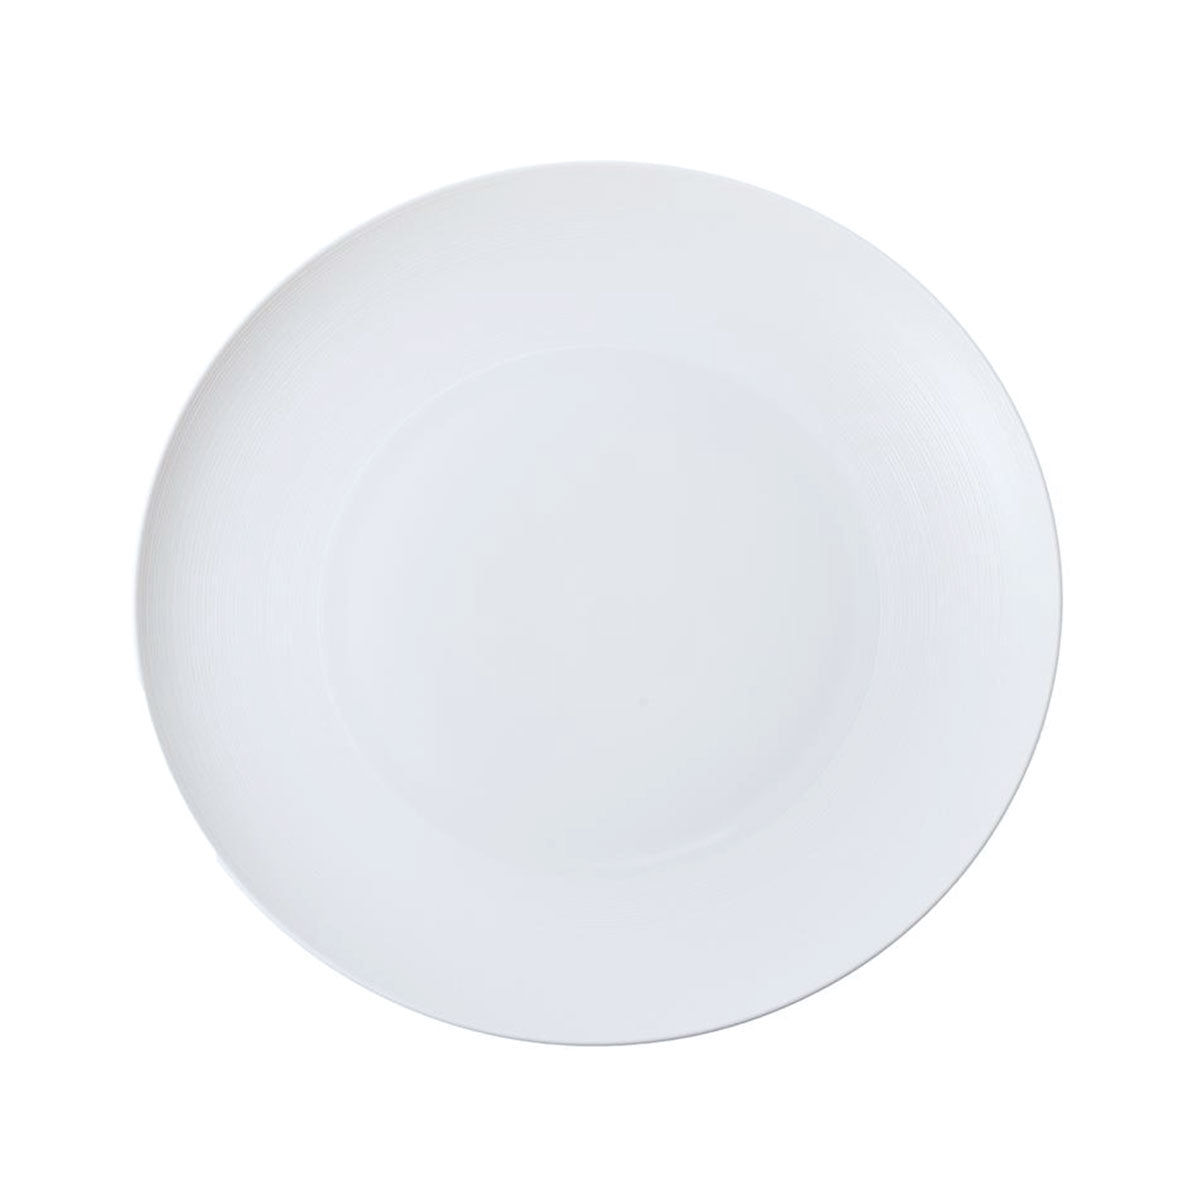 HEMISPHERE White Satin - Flat round dish, maxi